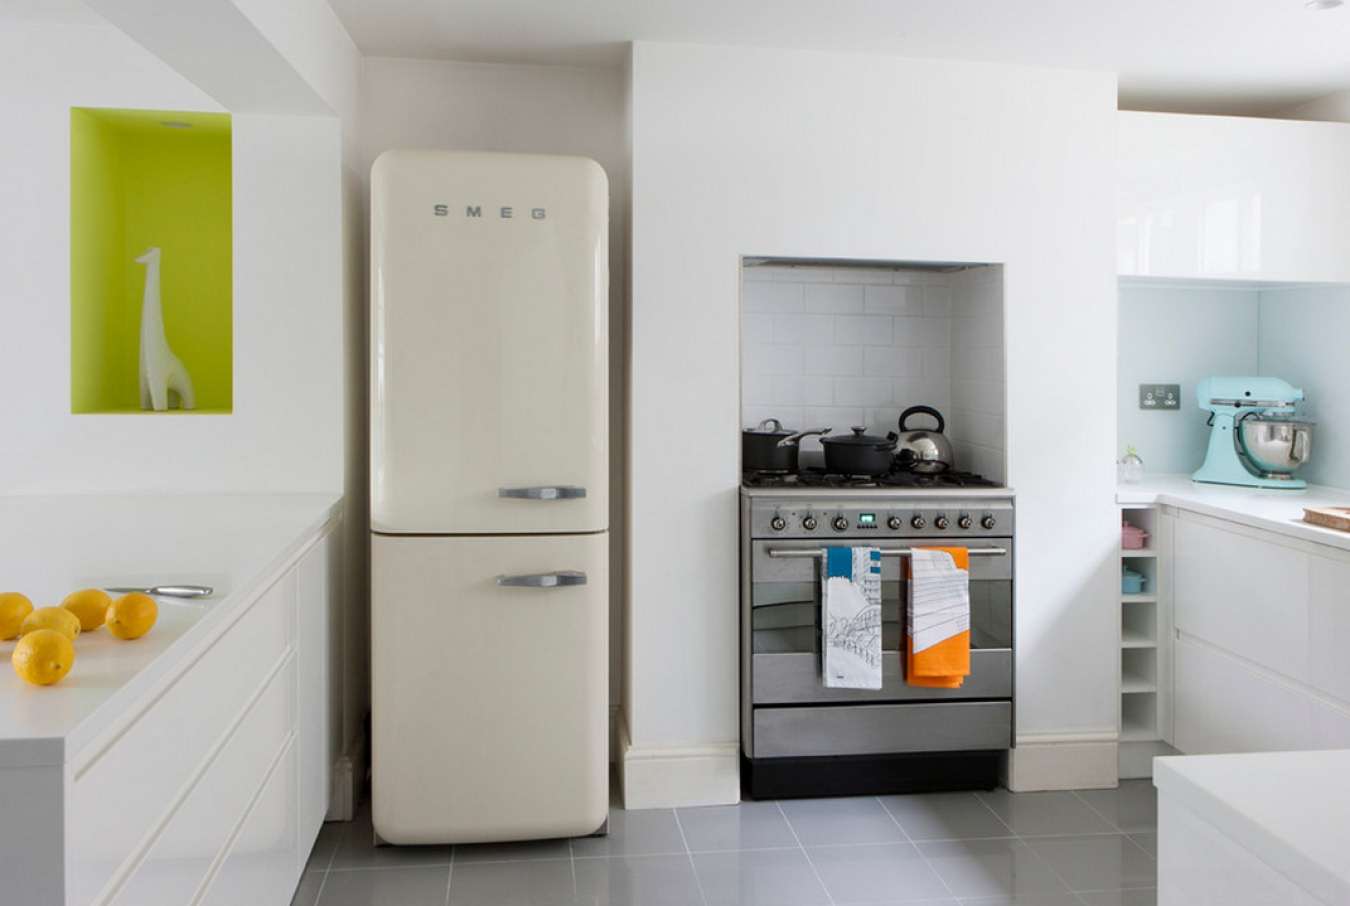 grand réfrigérateur dans la façade de la cuisine en noir